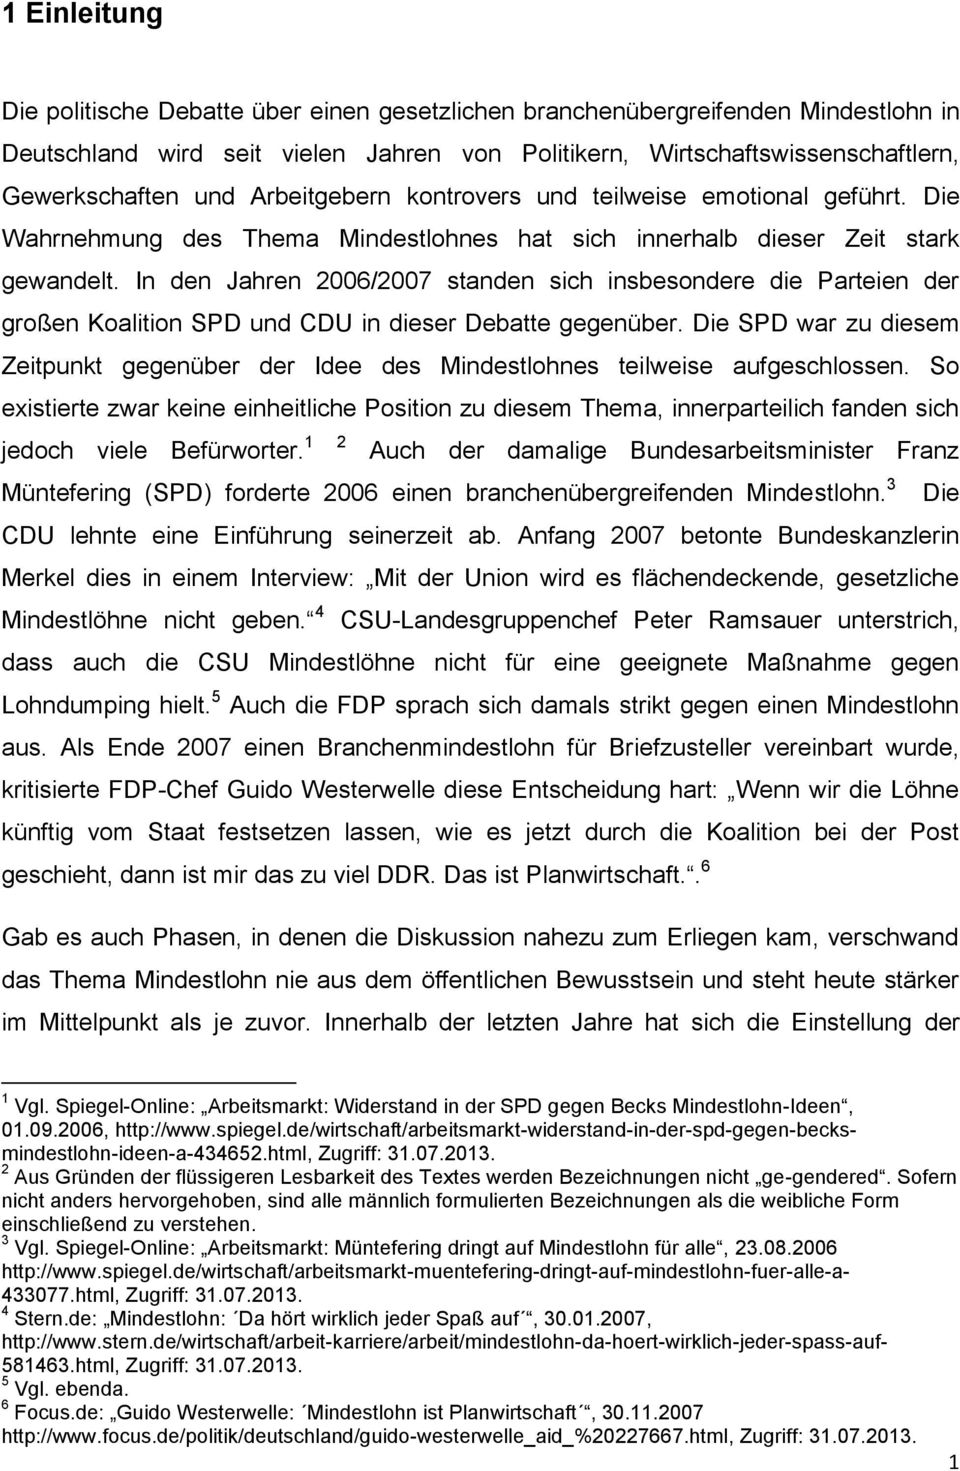 In den Jahren 2006/2007 standen sich insbesondere die Parteien der großen Koalition SPD und CDU in dieser Debatte gegenüber.